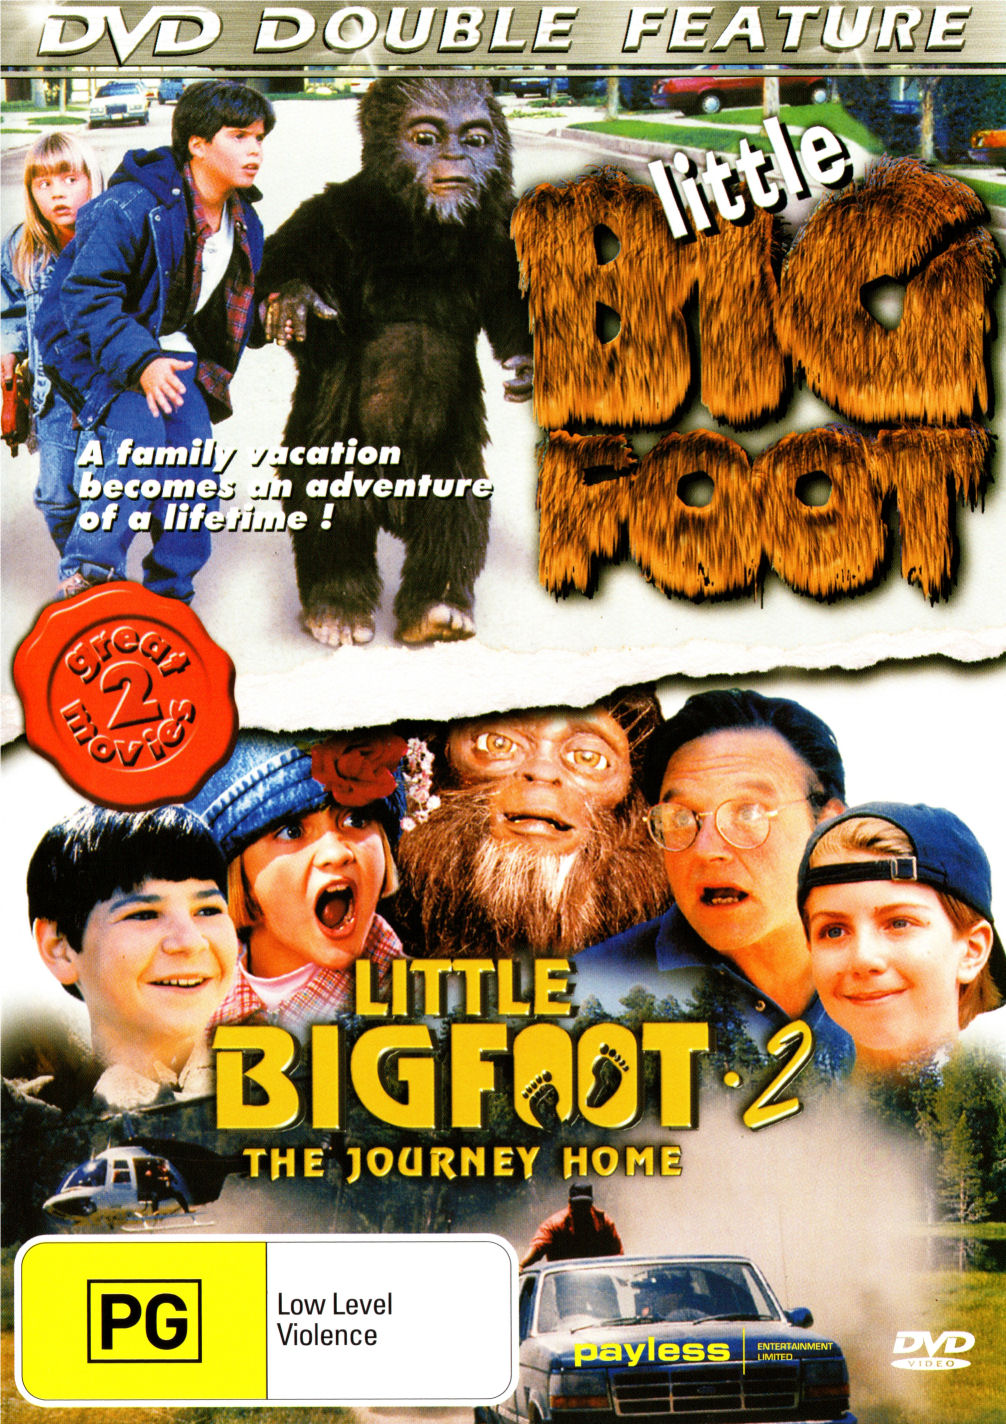 Little Bigfoot (1997) Screenshot 3